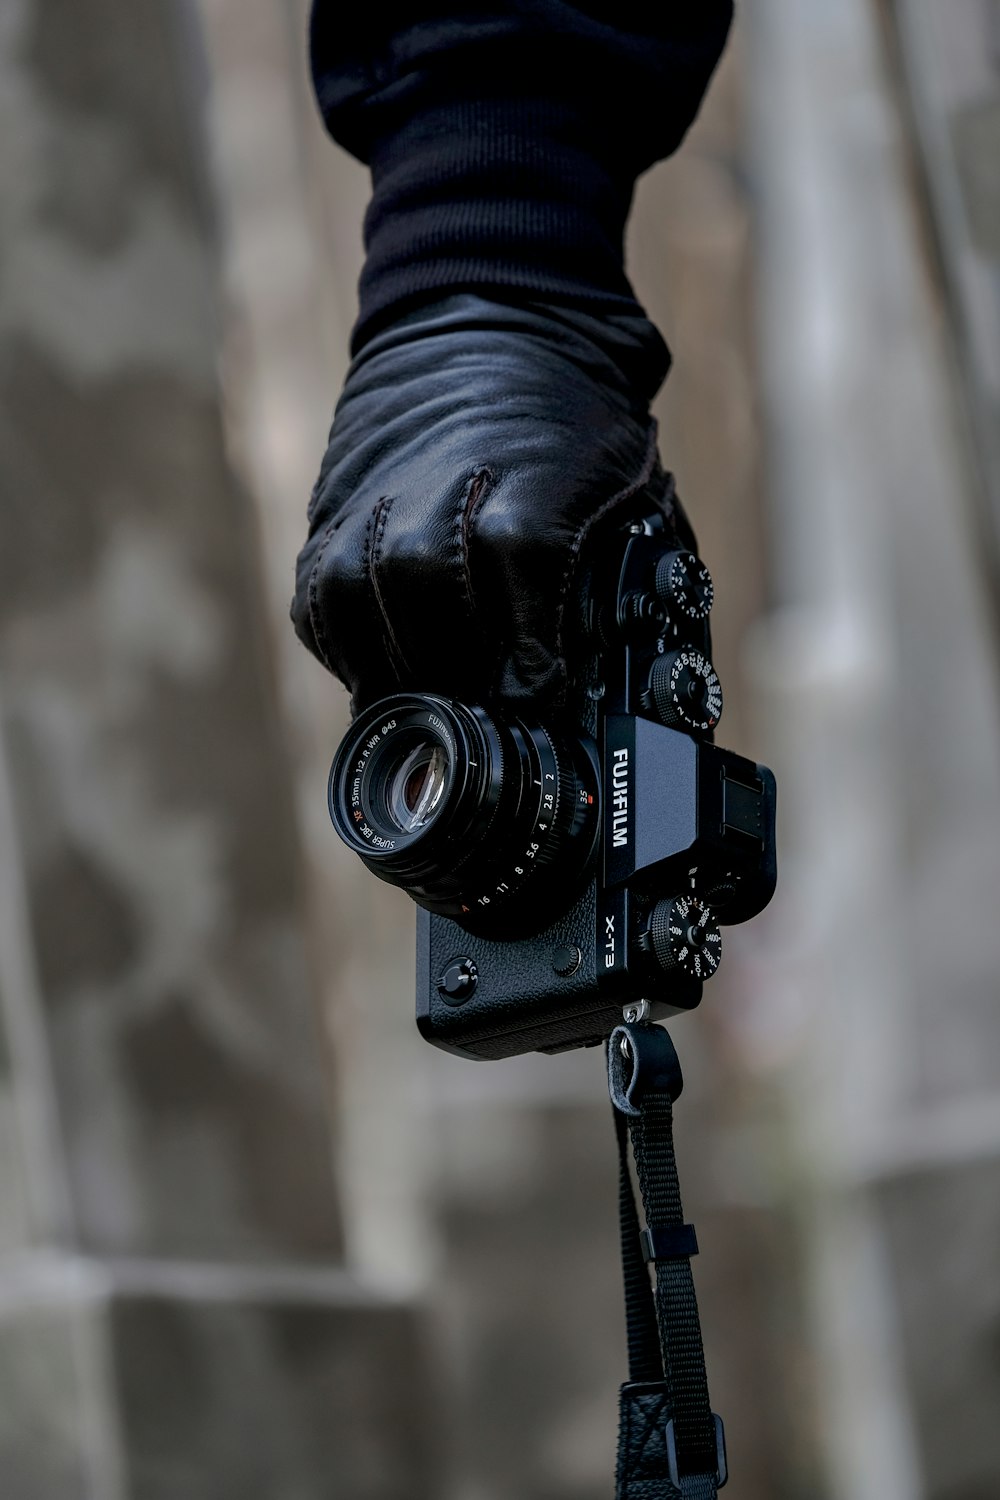 la mano de la persona que sostiene la cámara de puente Fujifilm negra